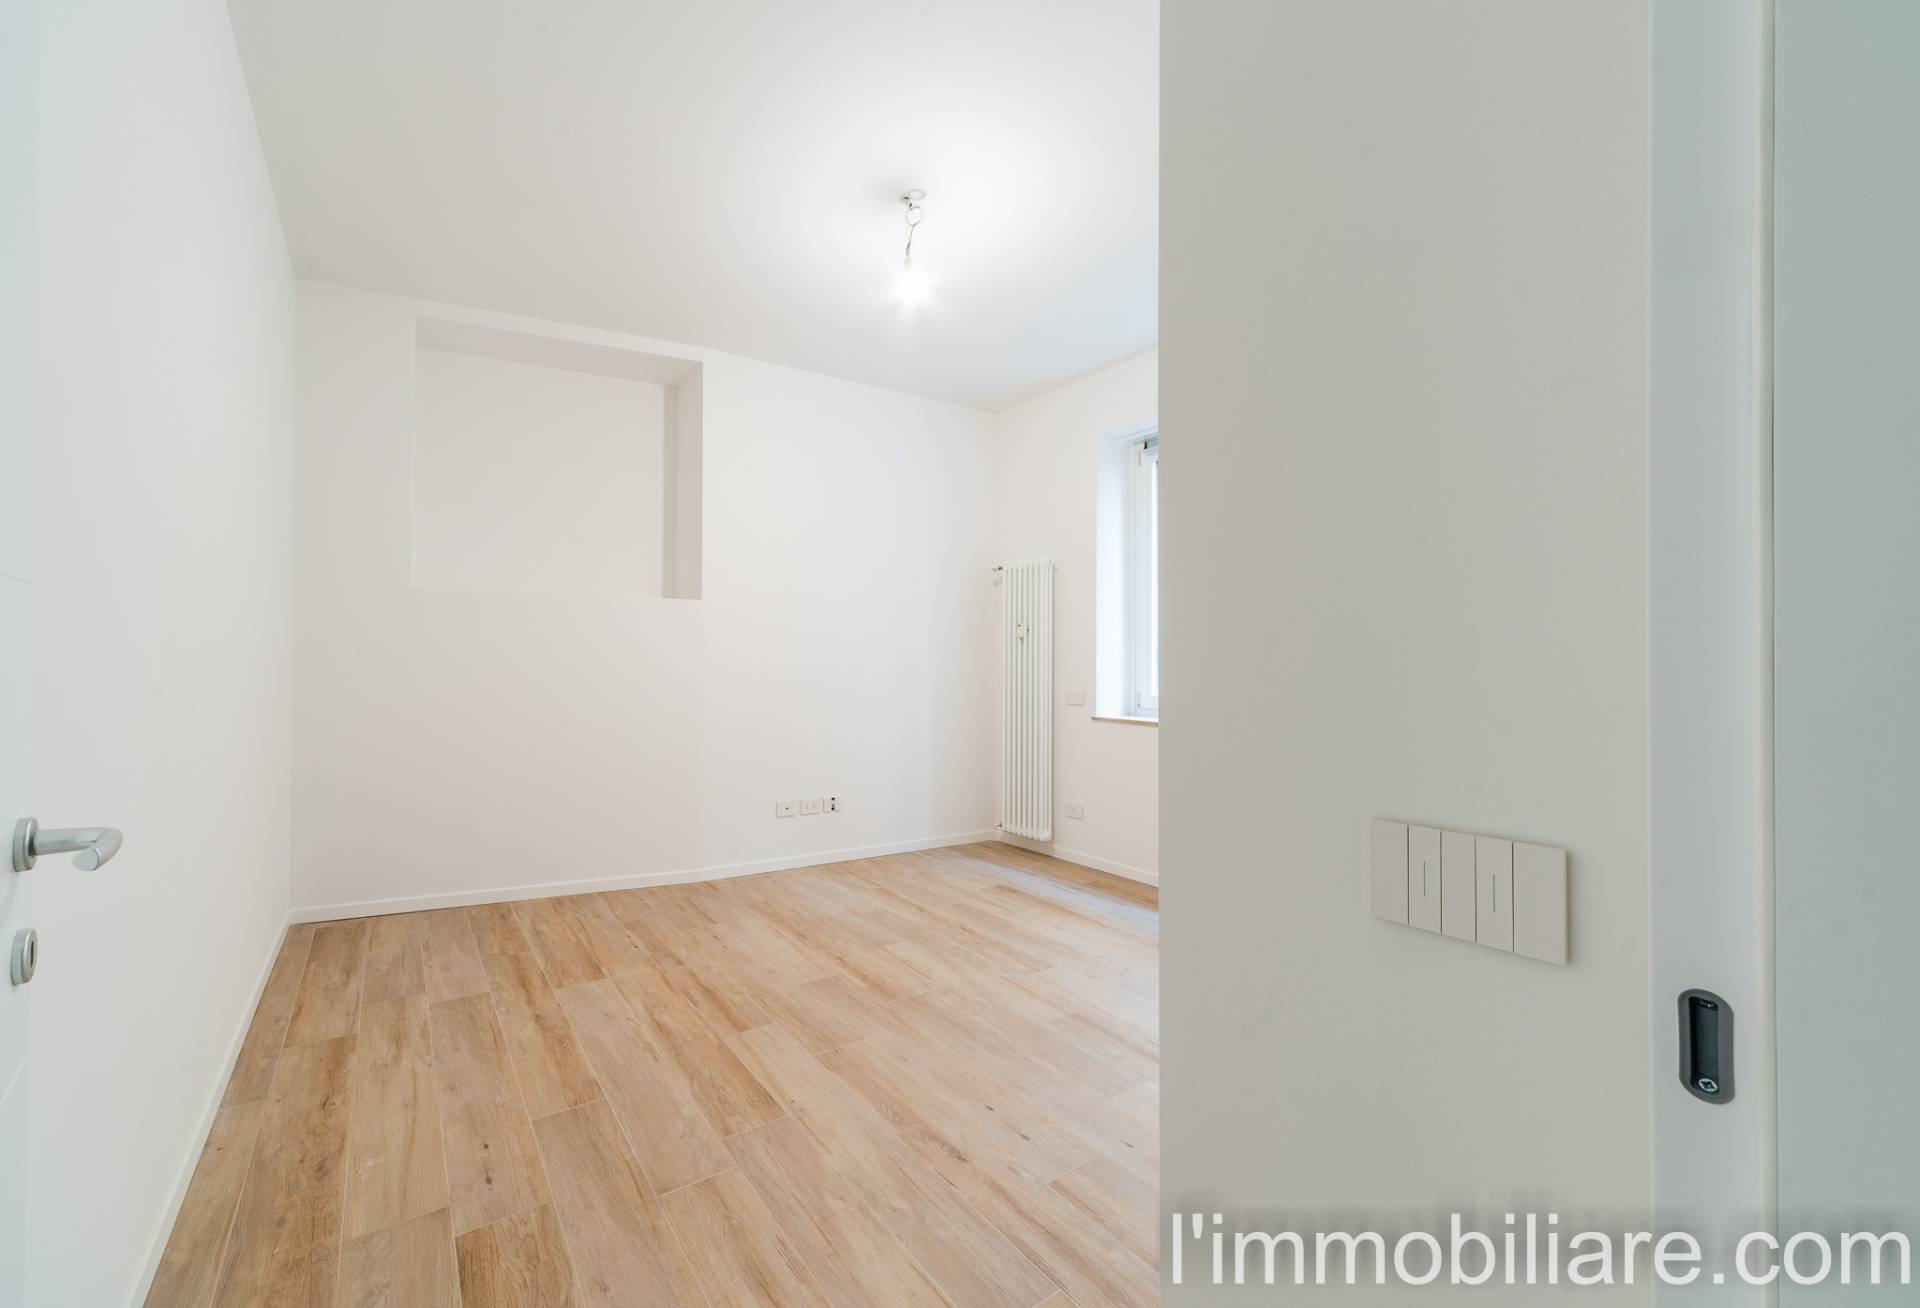 Appartamento in Vendita a Verona: 2 locali, 55 mq - Foto 14